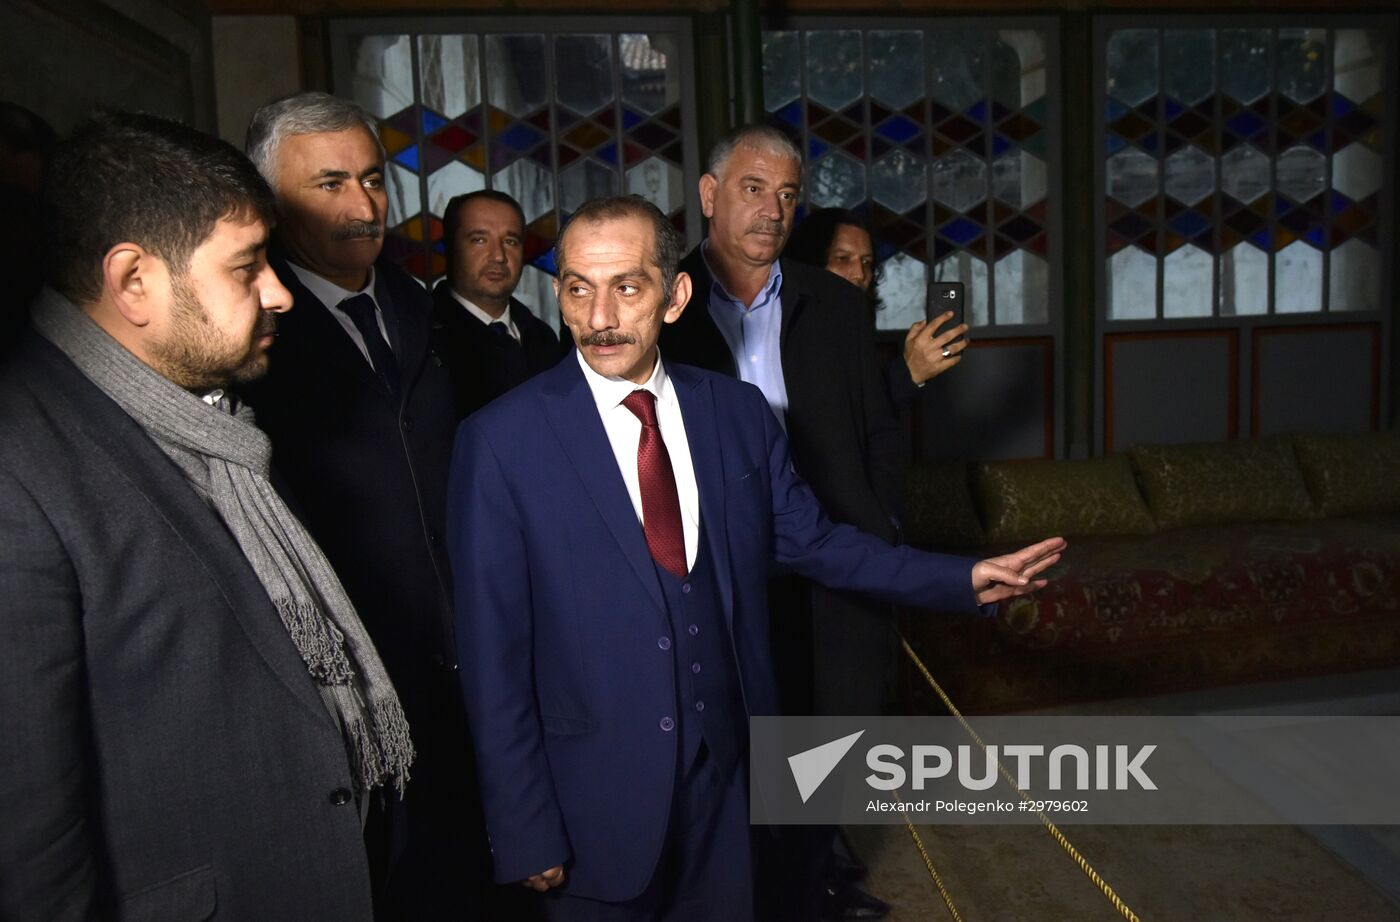 Turkish delegation visits Crimea